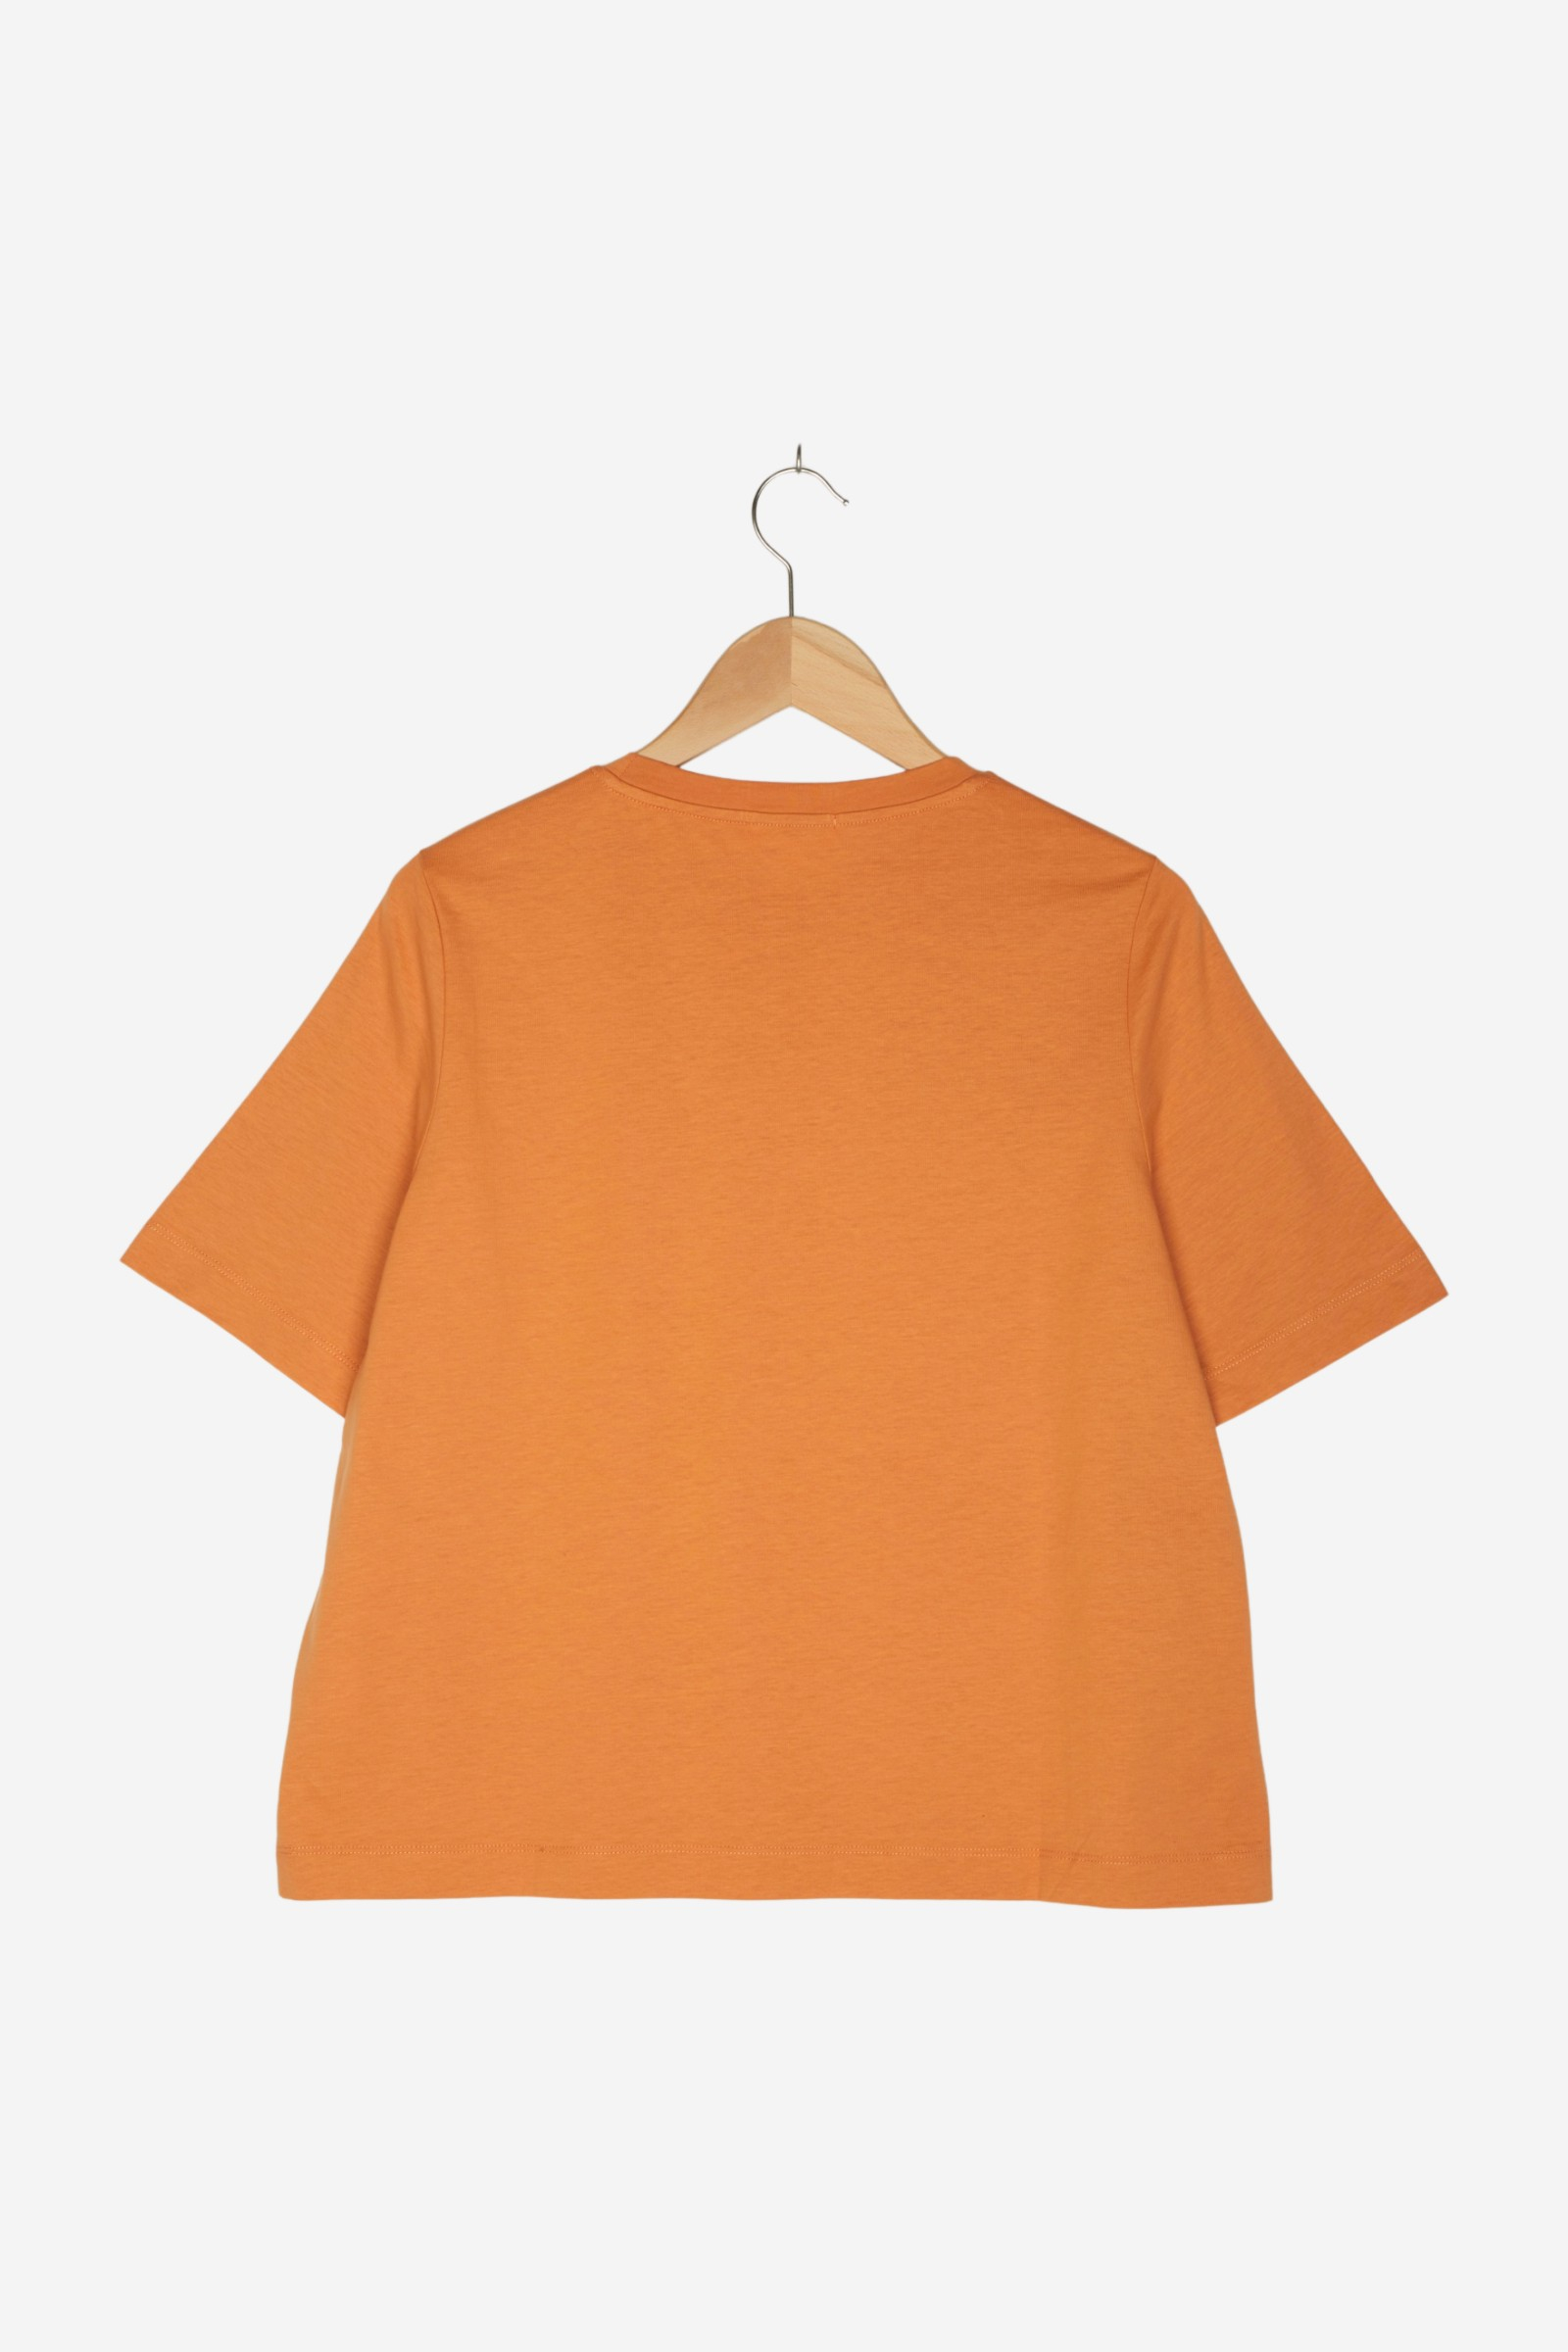 women Tops & T-Shirts Women / Shirts / T-Shirt Orange